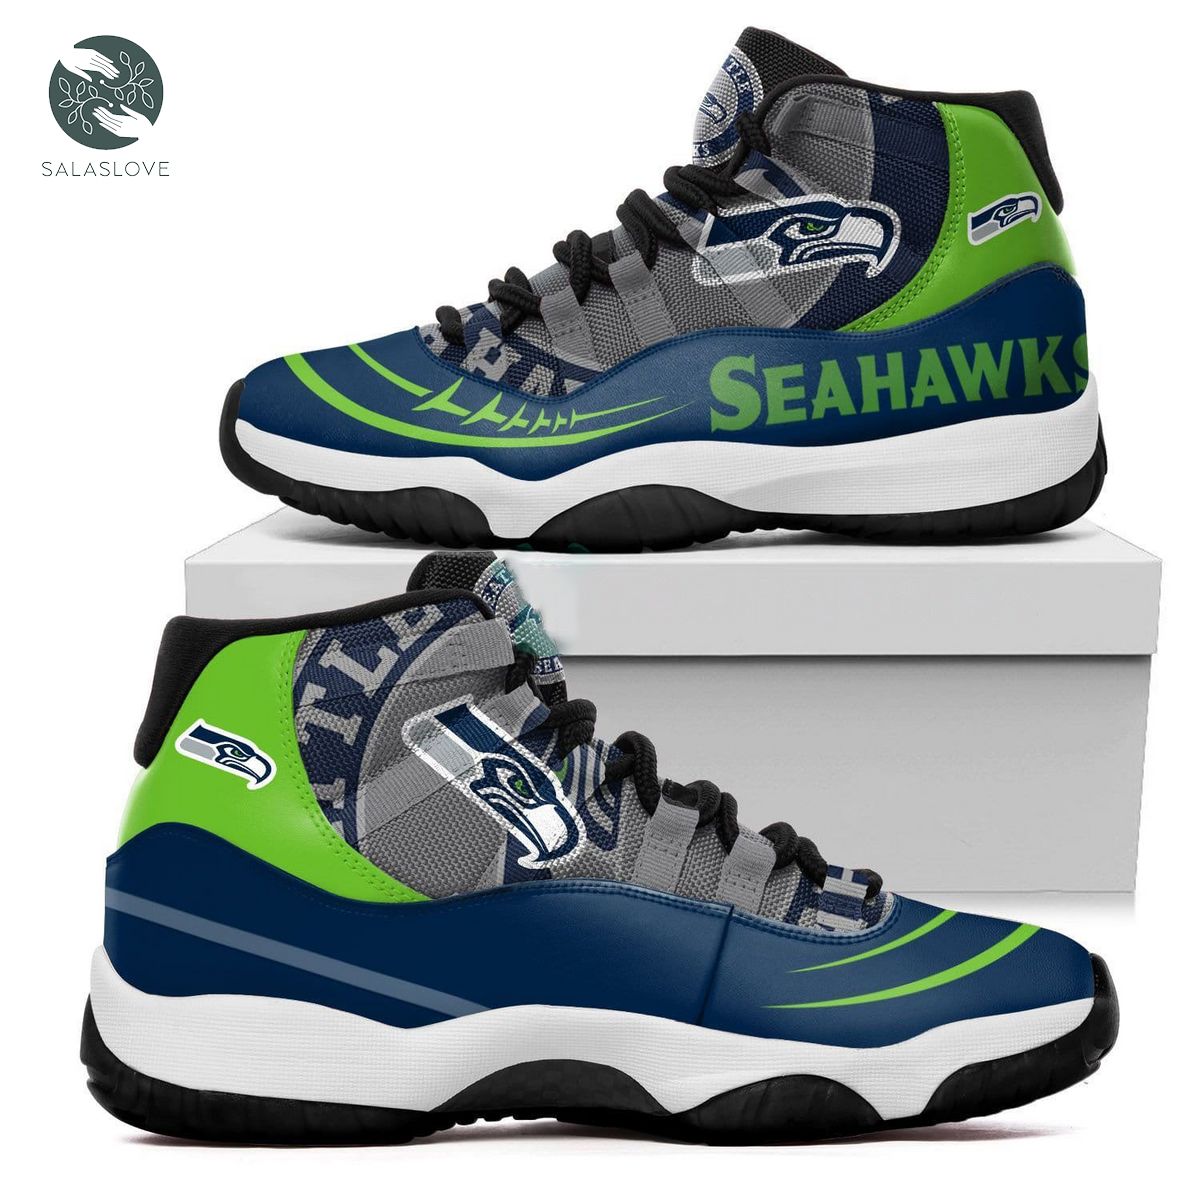 Seattle Seahawks New Air Jordan 11